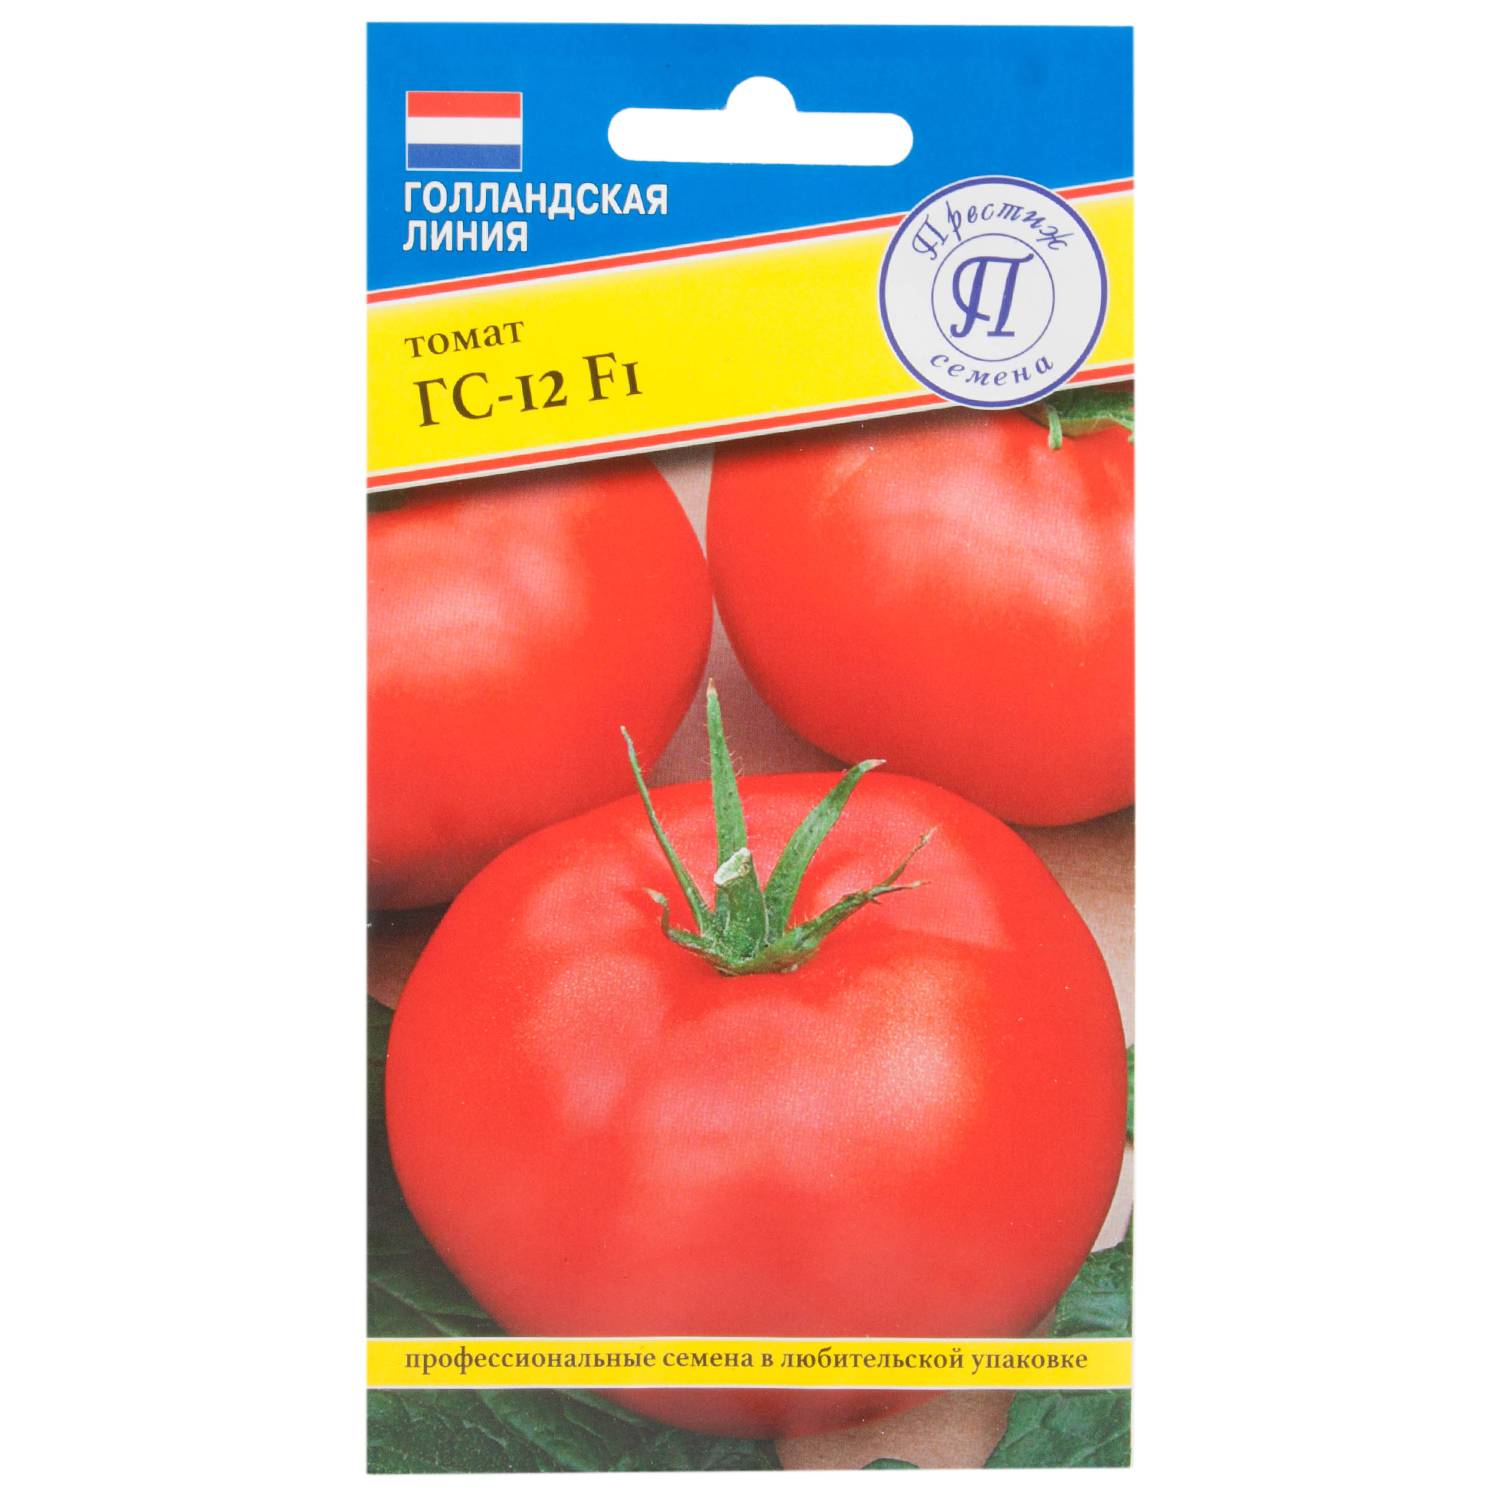 Характеристики и описание томат «красная гвардия f1»: отзывы садоводов